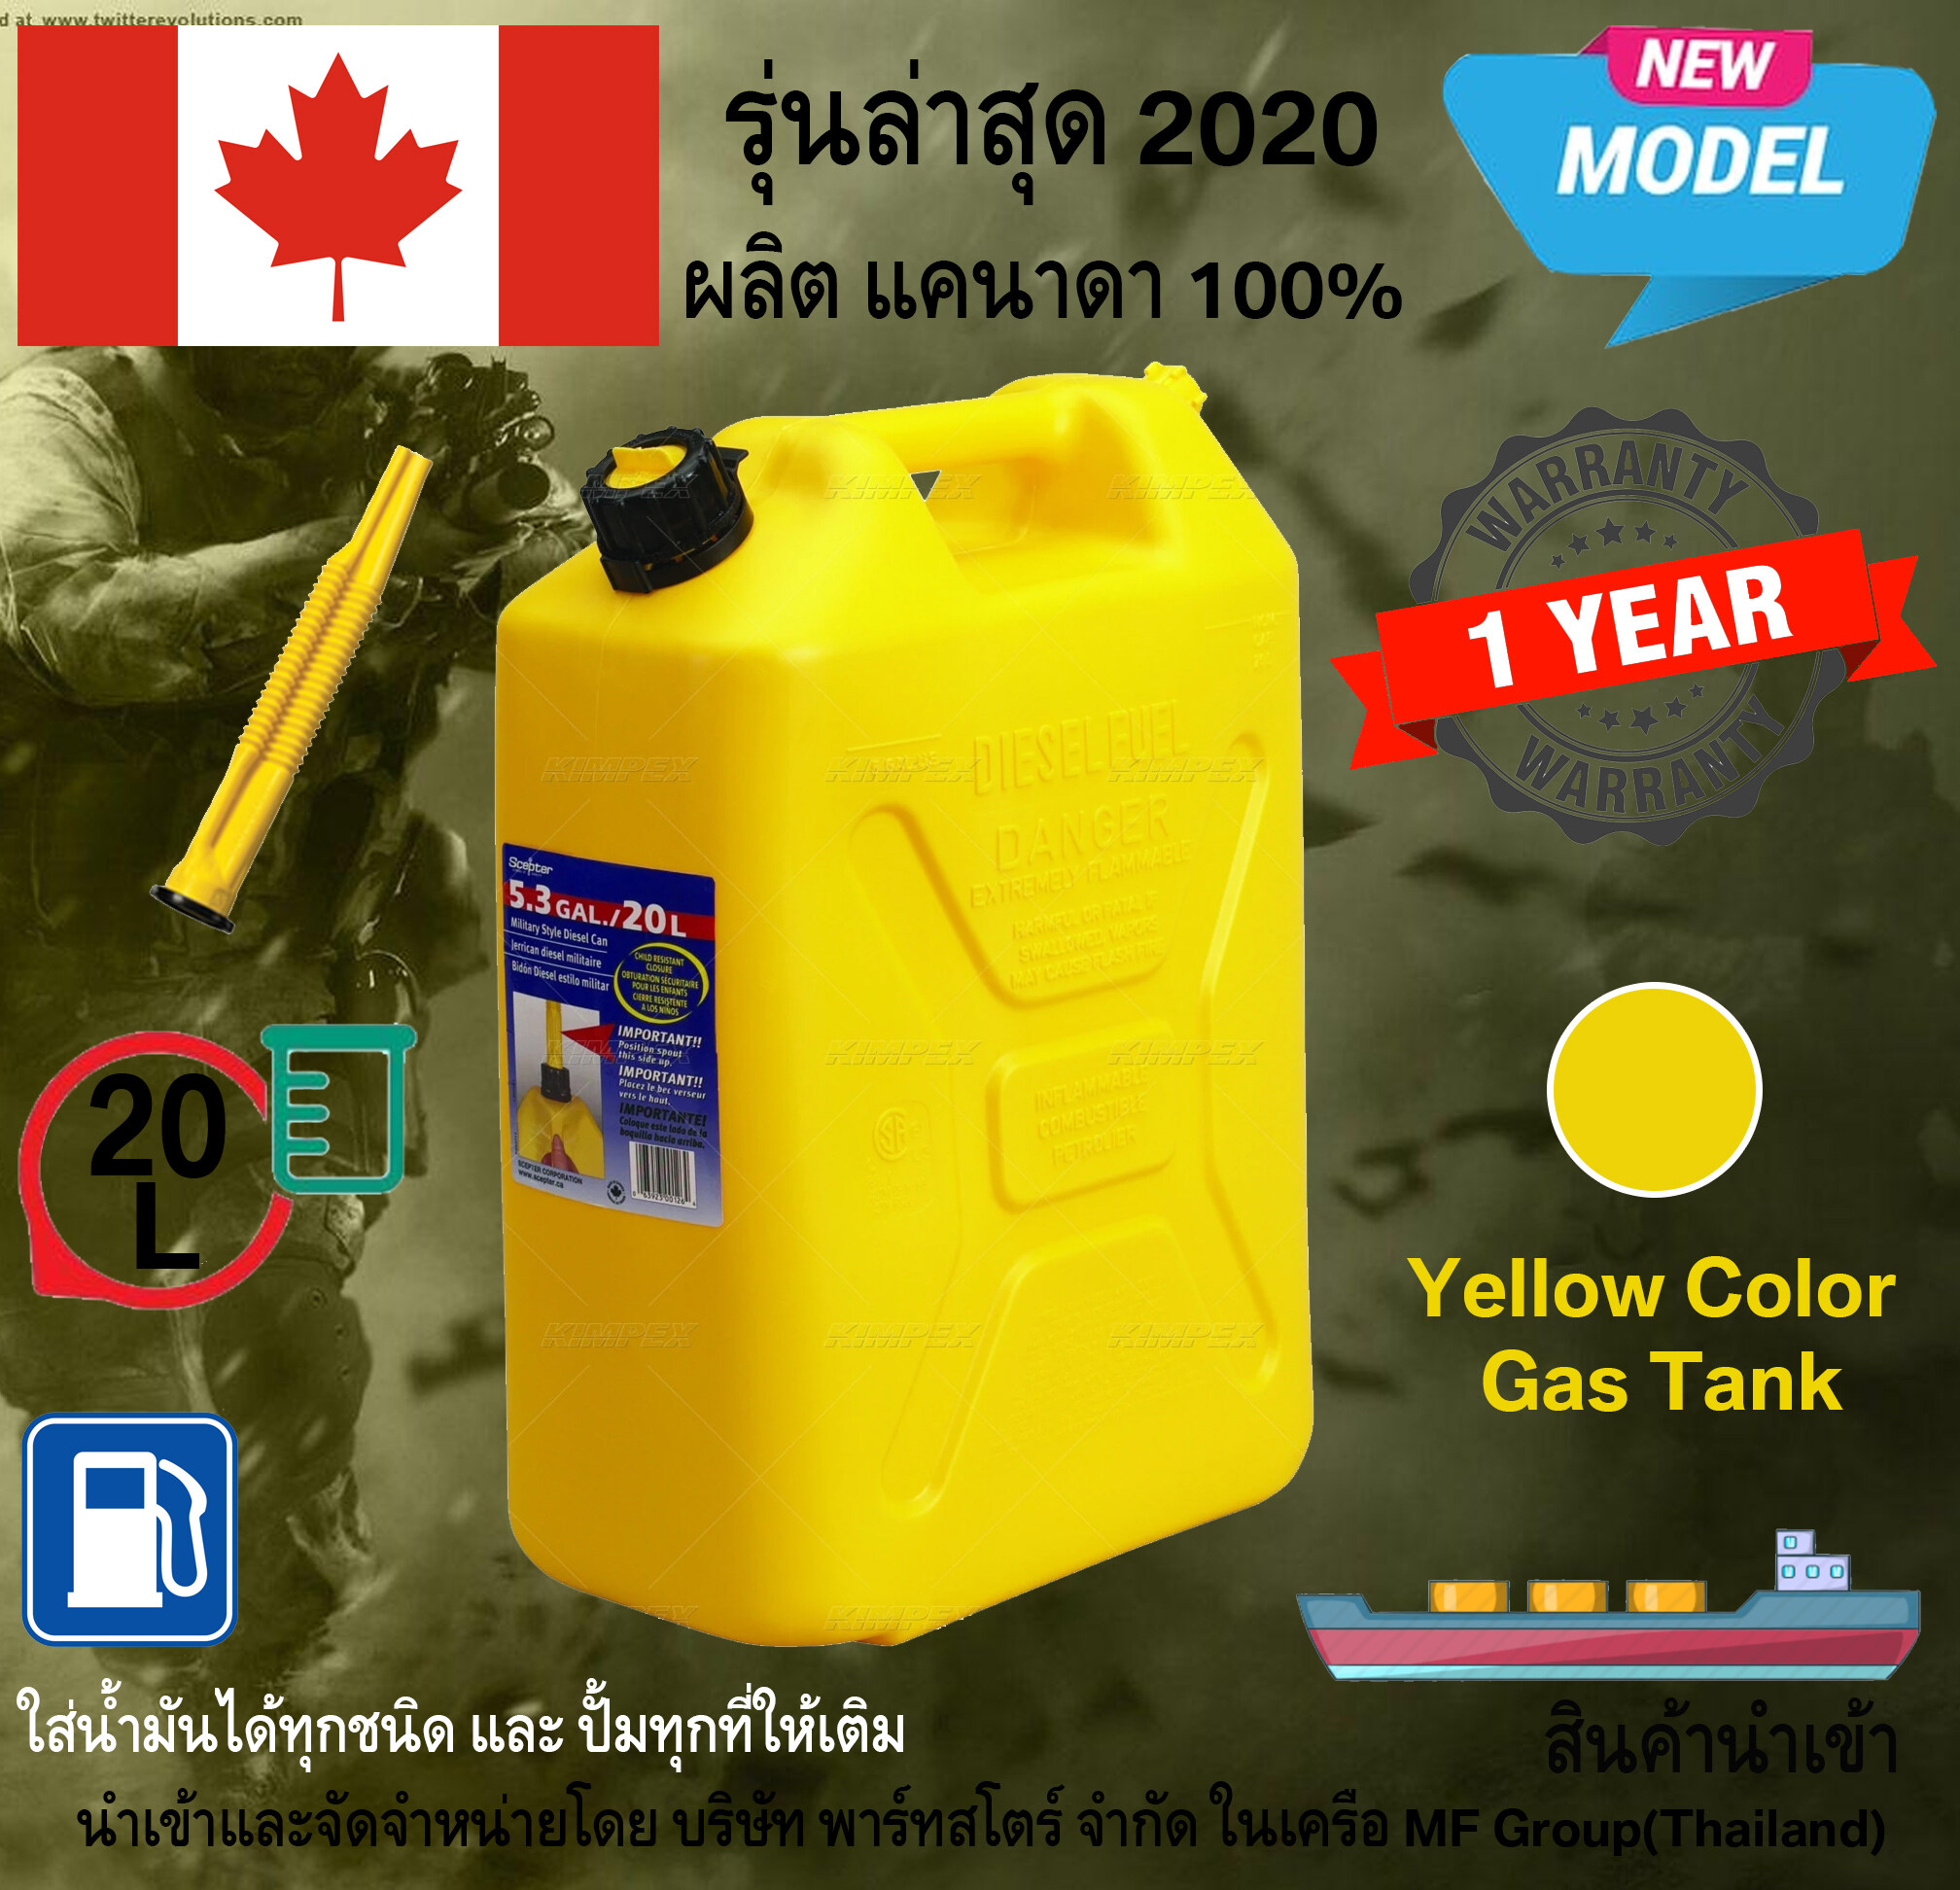 ถังน้ำมัน ทรงทหาร ถังบรรจุน้ำมัน สีเหลือง ขนาด 20 ลิตร SCEPTER